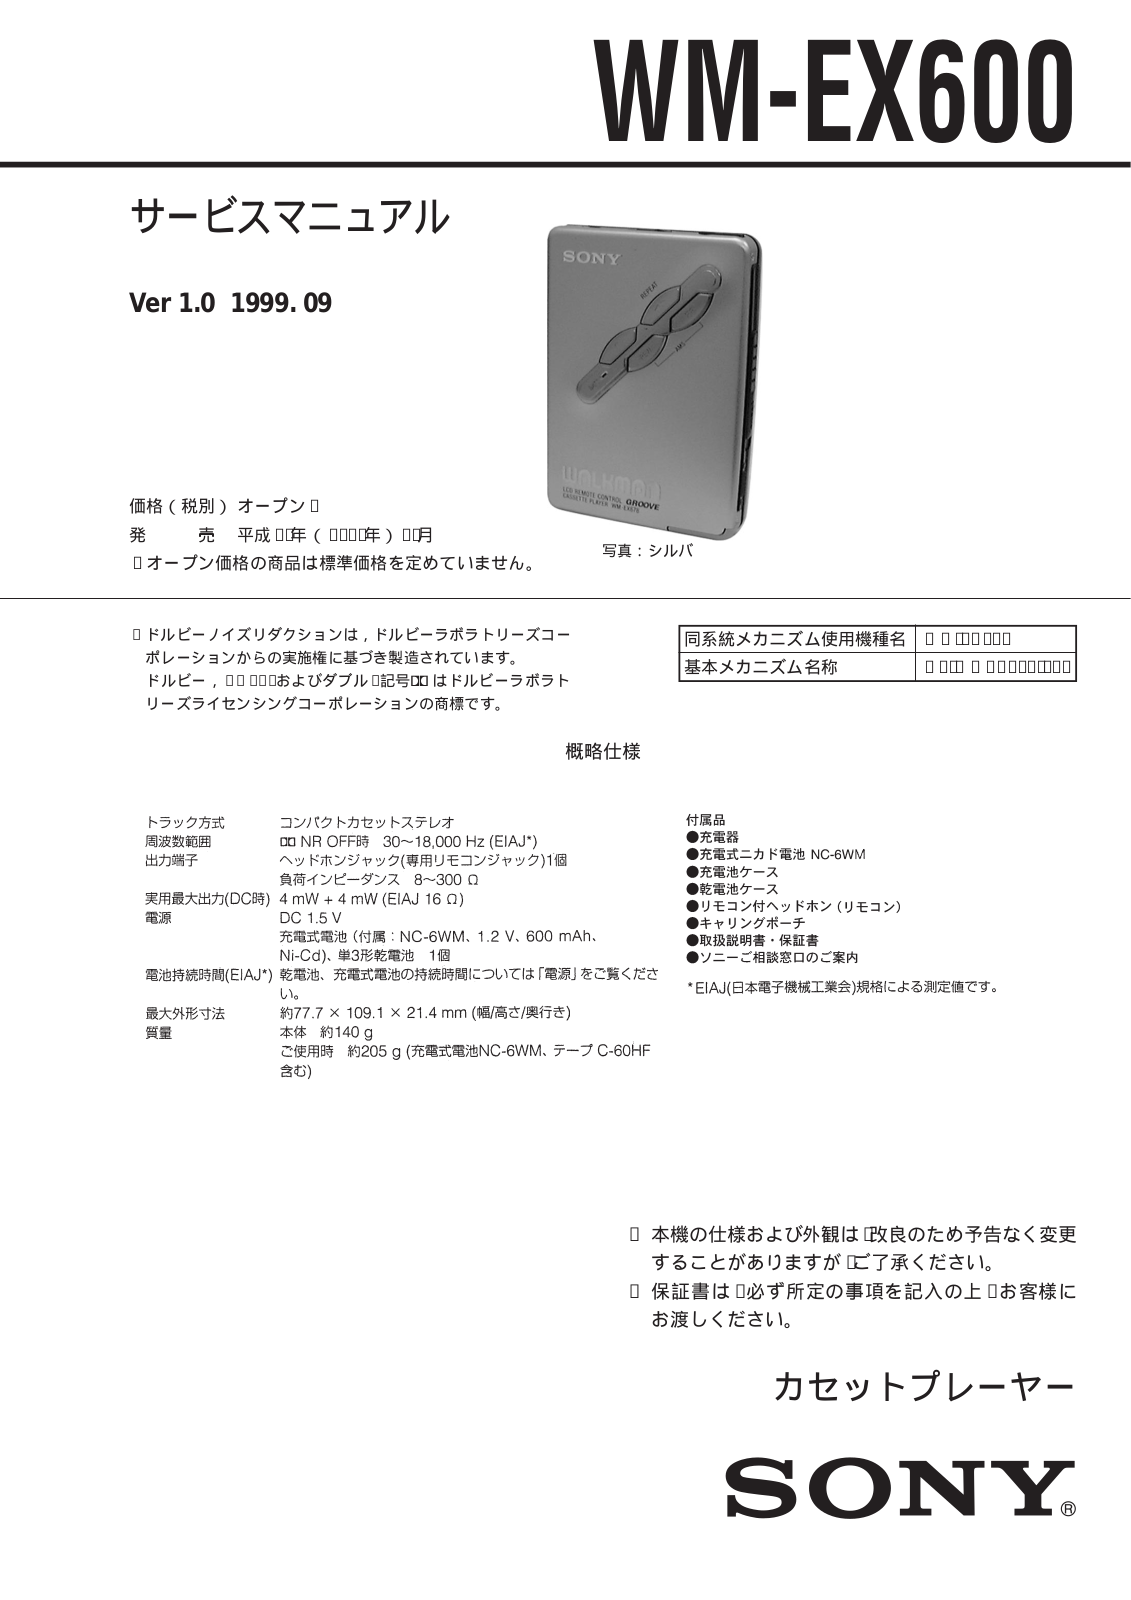 Sony WM-EX600 Service Manual